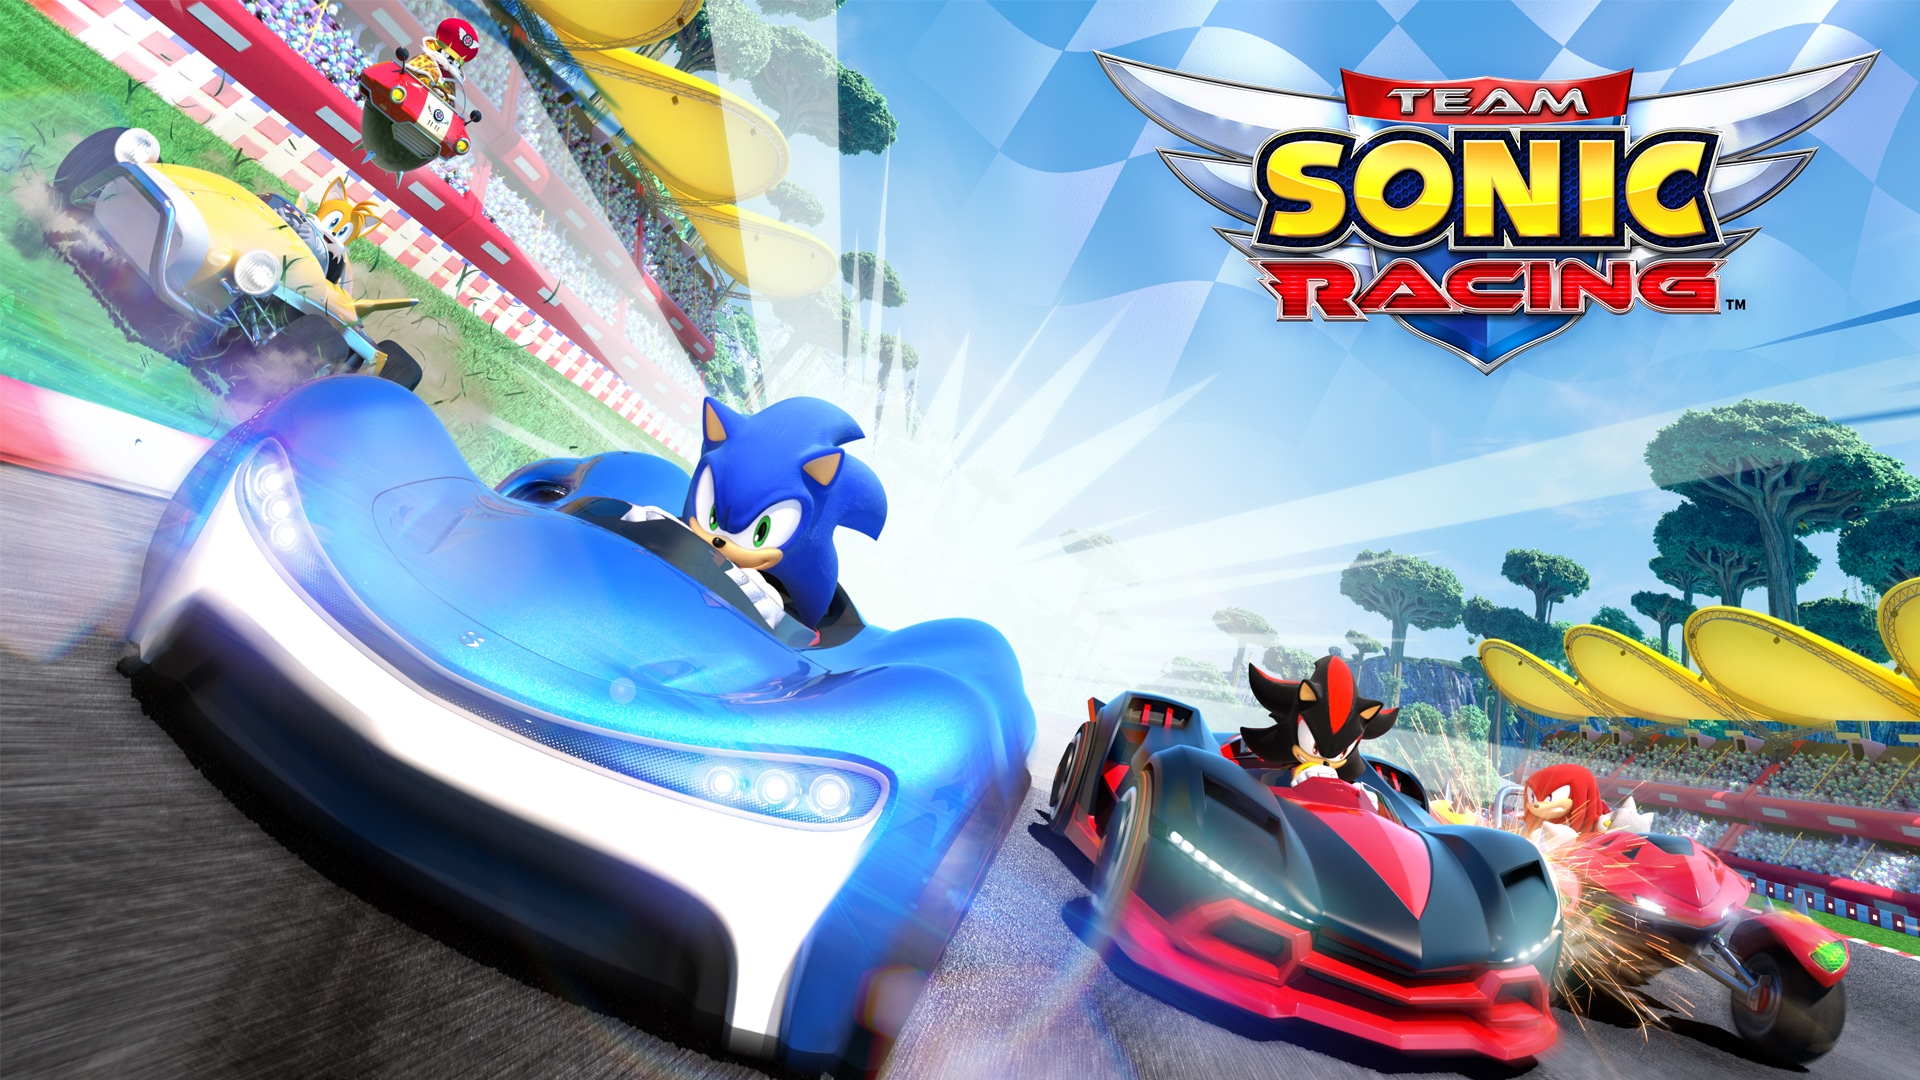 Los mejores fondos de pantalla de Team Sonic Racing para la pantalla del teléfono